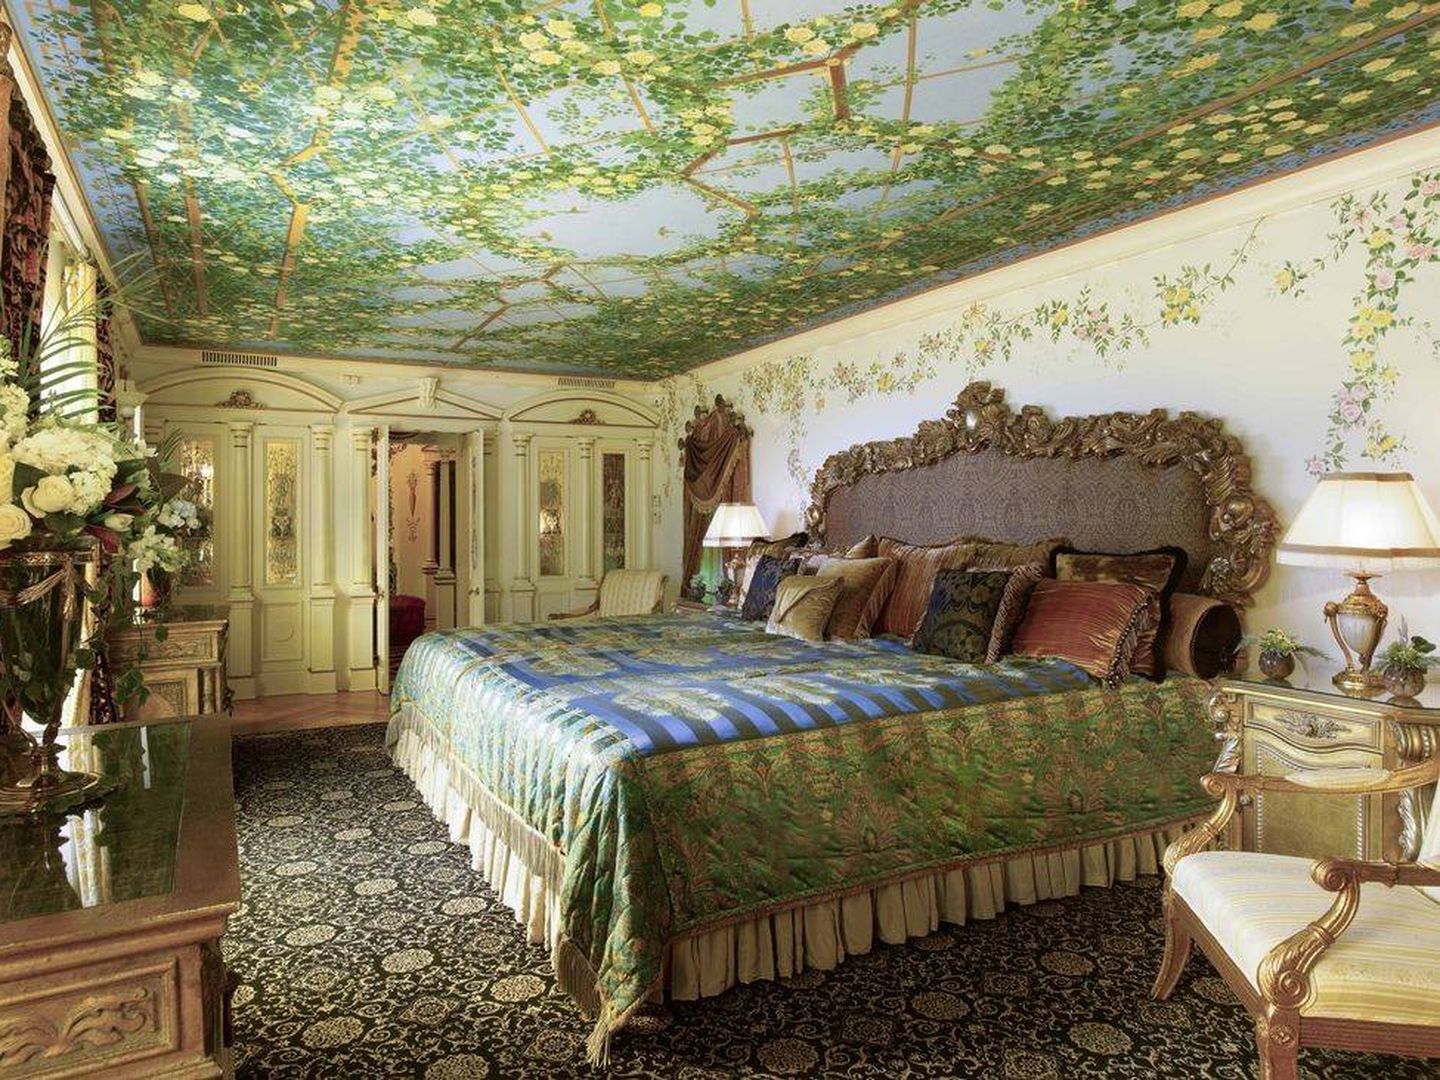 Imagen del hotel Villa Casa Casuarina de Miami que perteneció a Gianni Versace.